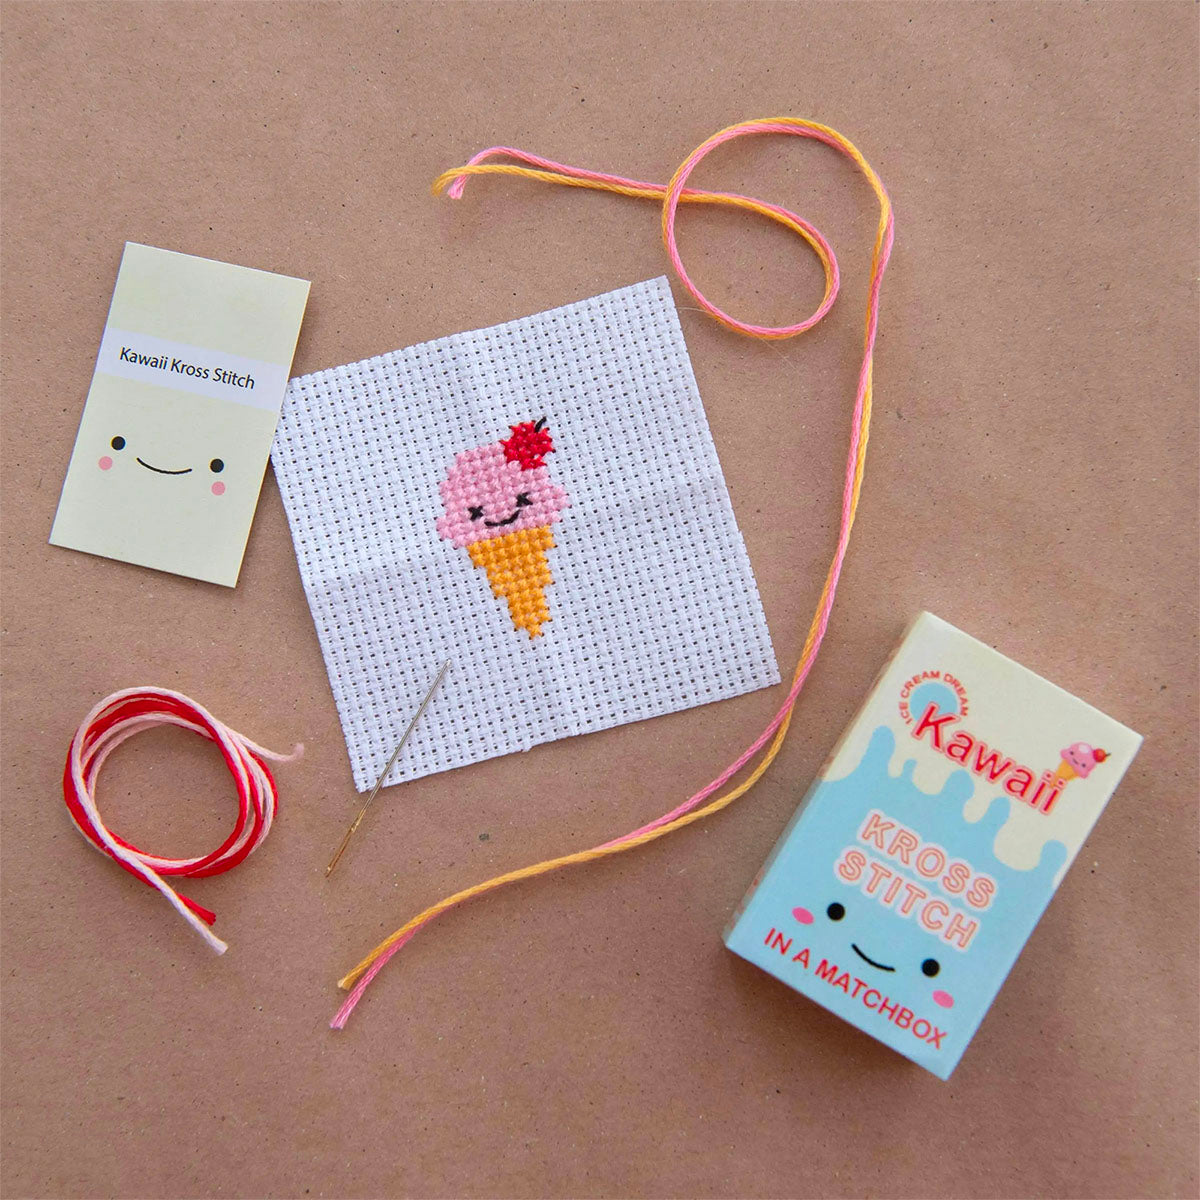 Mini Matchbox Cross Stitch Kit - Kawaii Ice Cream